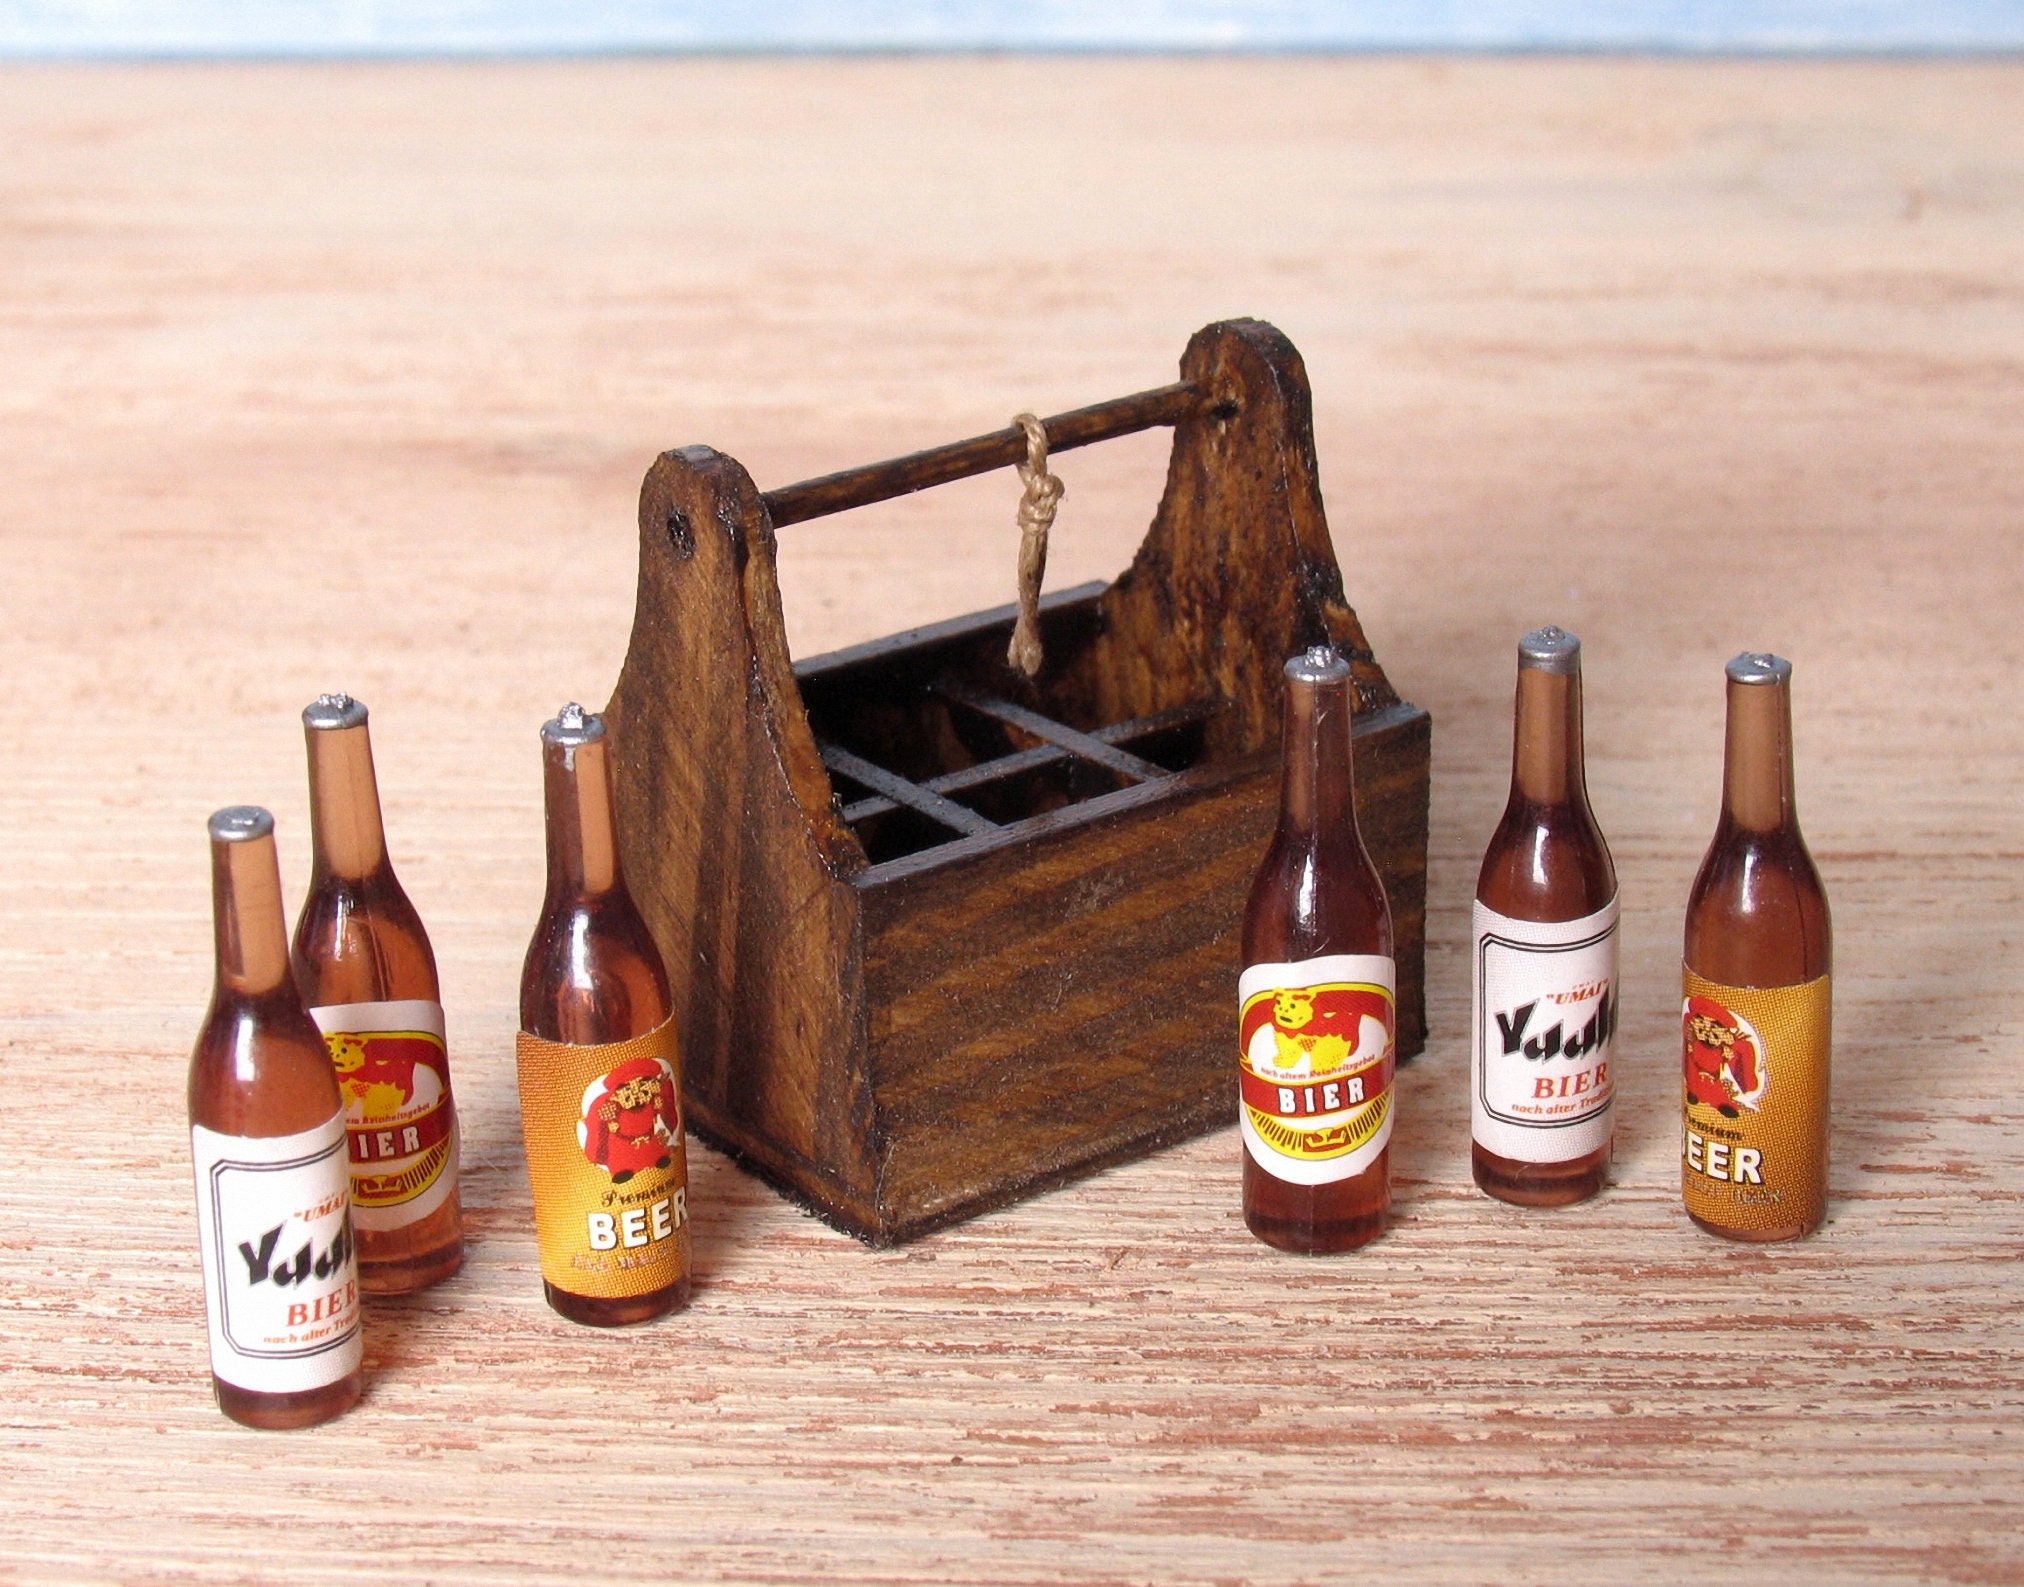 6 bouteilles de bière, Boissons, bouteilles, description, accessoires et  miniatures pour maison de poupées 